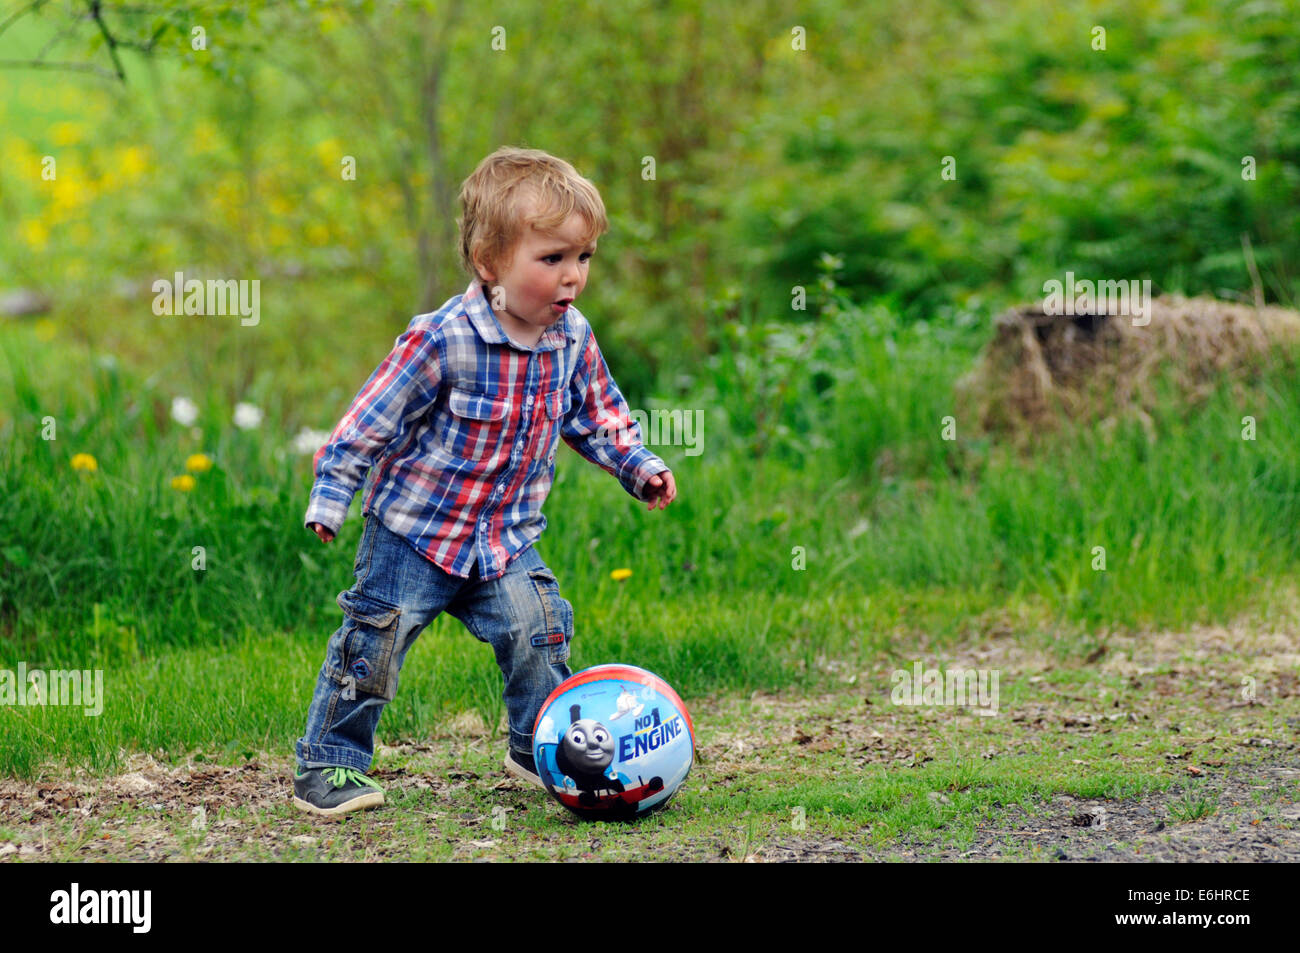 Ein kleiner Junge spielt mit einem ball Stockfoto